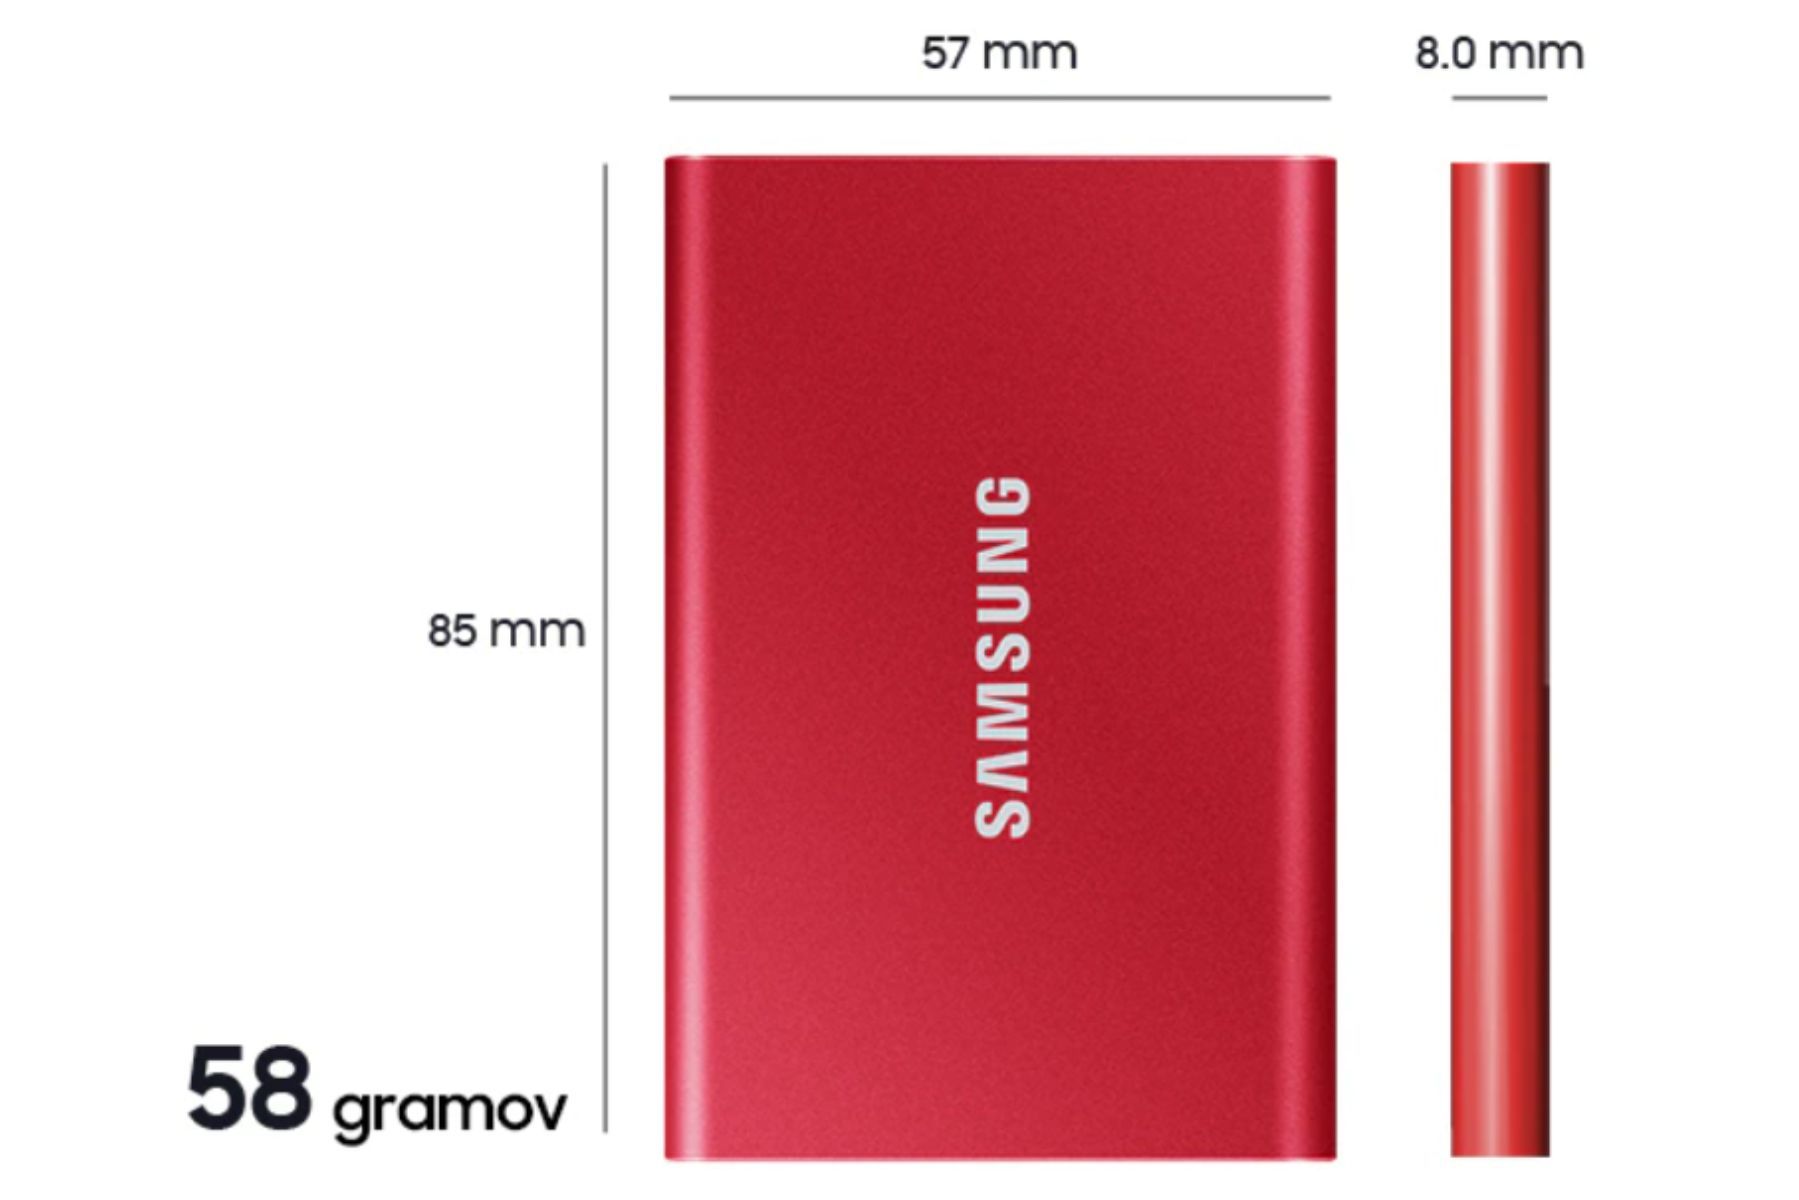 Externý disk Samsung T7 Štýlovo tenký a kompaktný